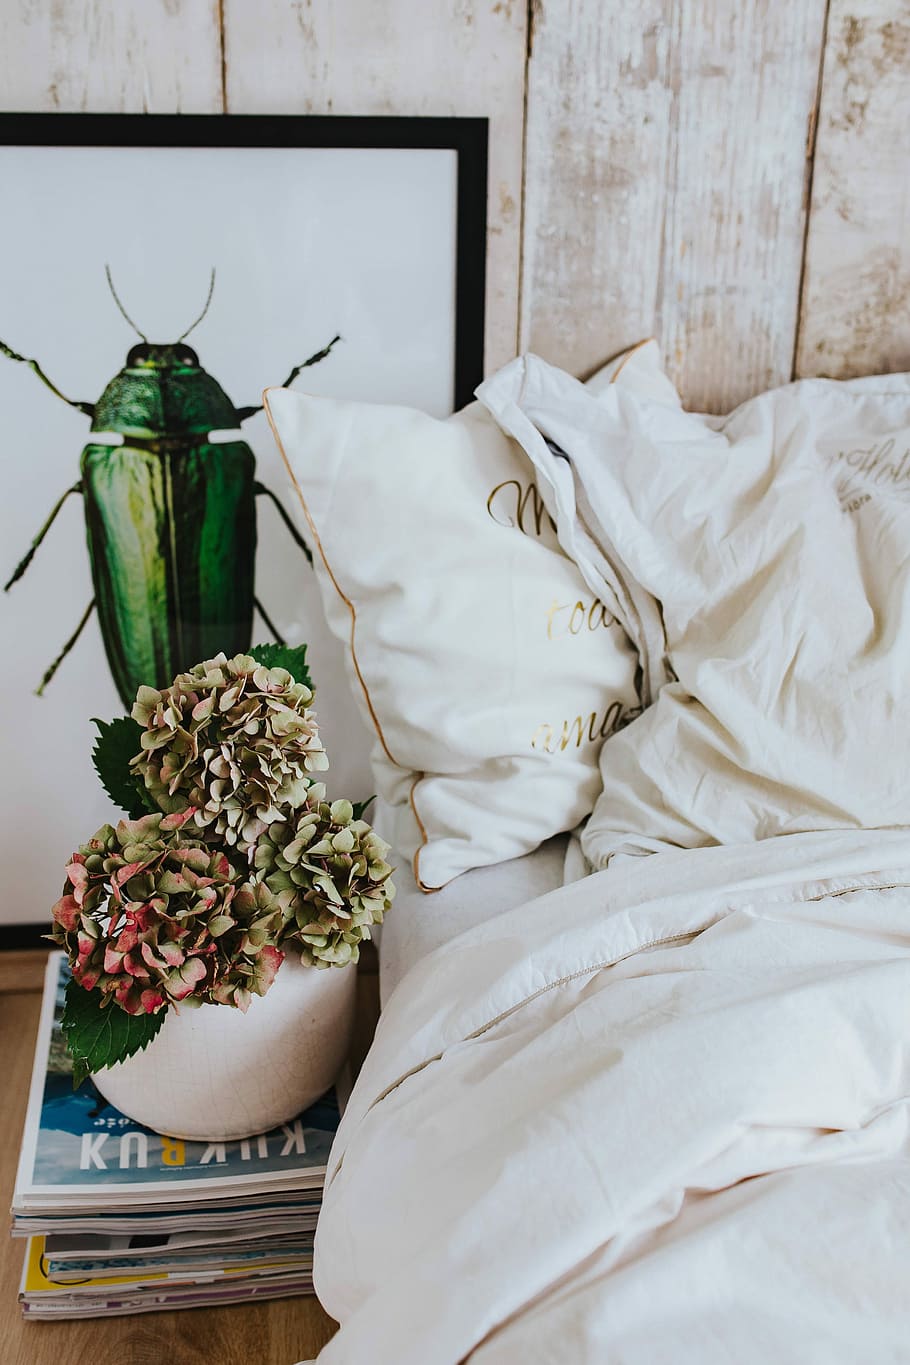 seprai, gambar, hijau, kumbang, tanaman pot, tumpukan, majalah, Putih, tempat tidur, selimut